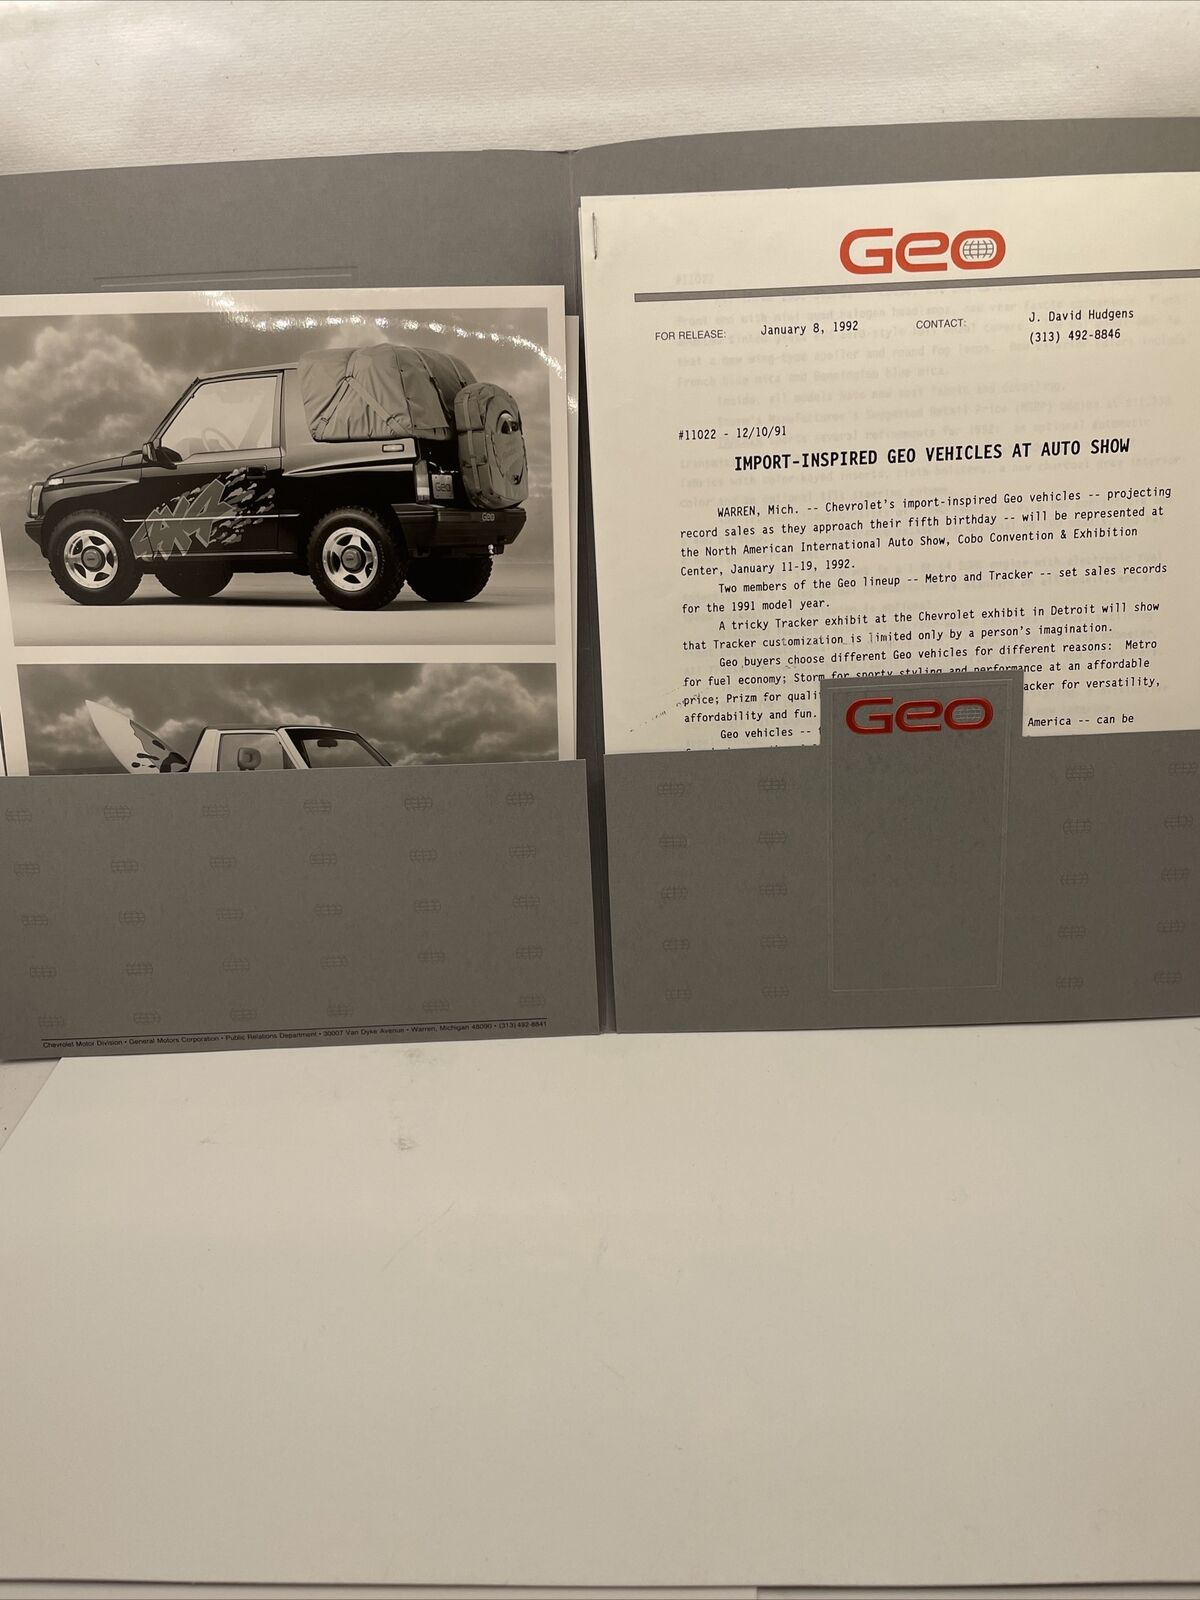 1991 Geo Auto Show Press Kit